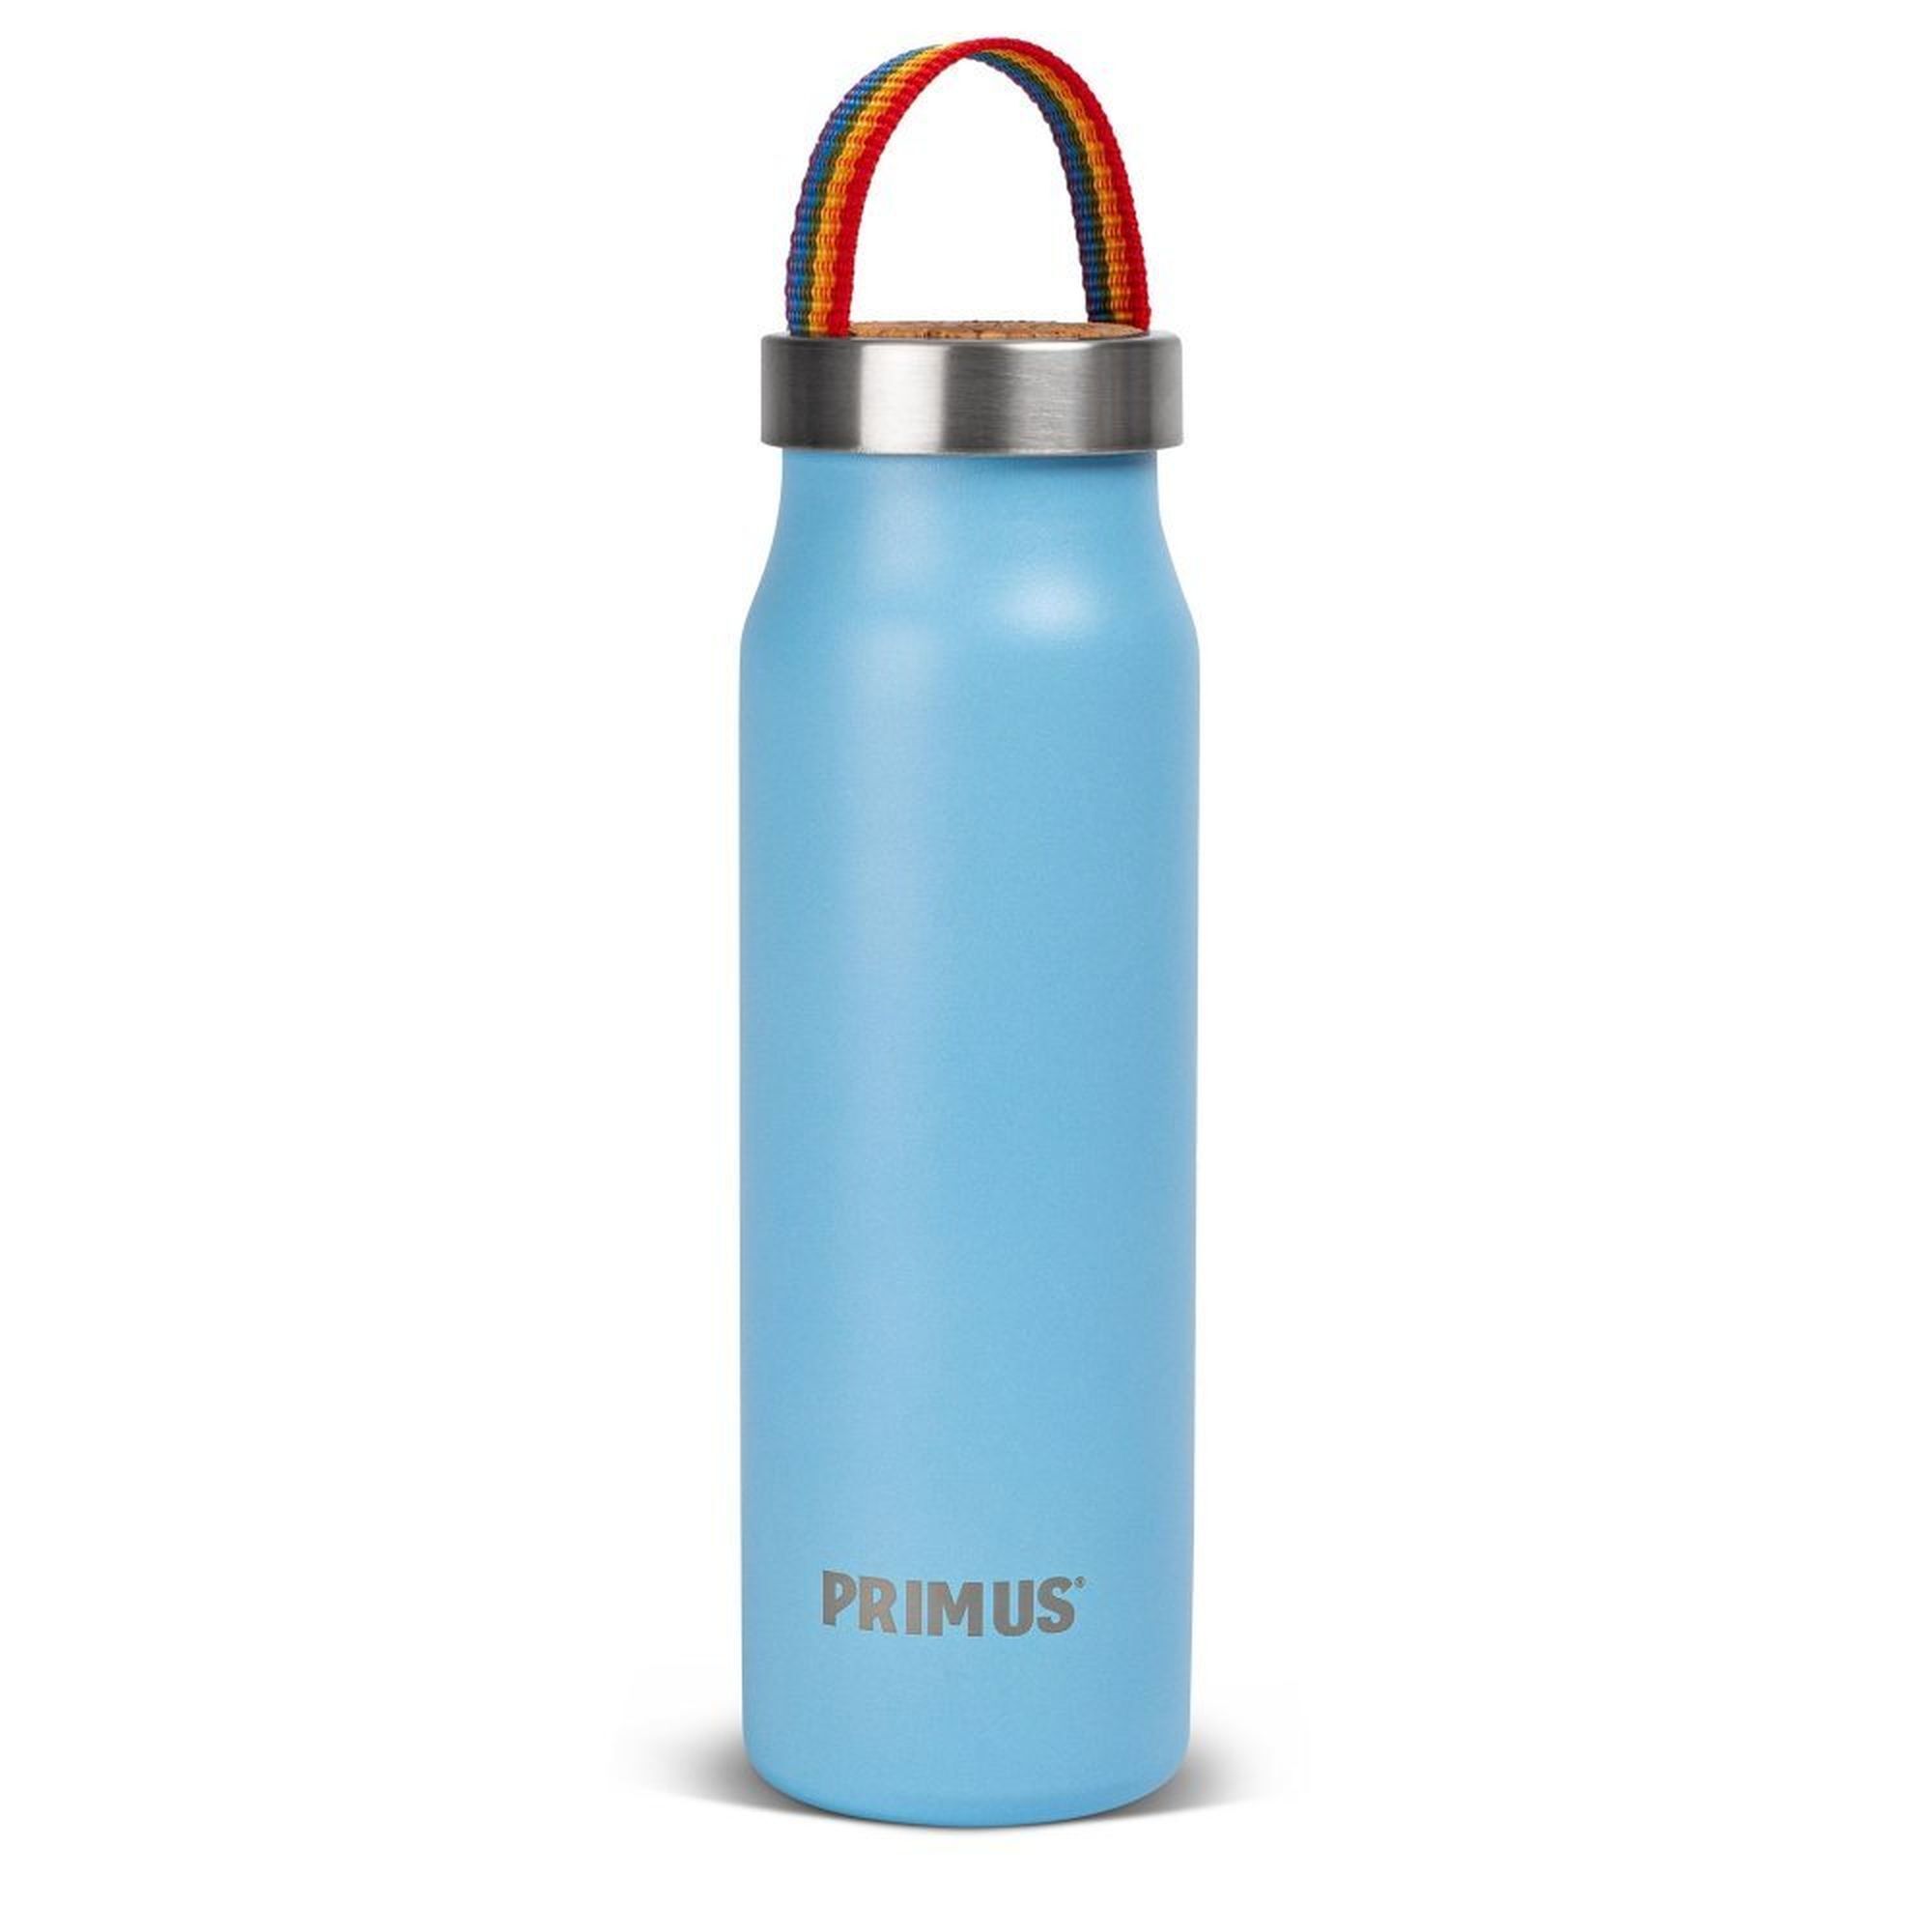 Primus Klunken Vacuum Bottle 0.5L - Bottiglia termica